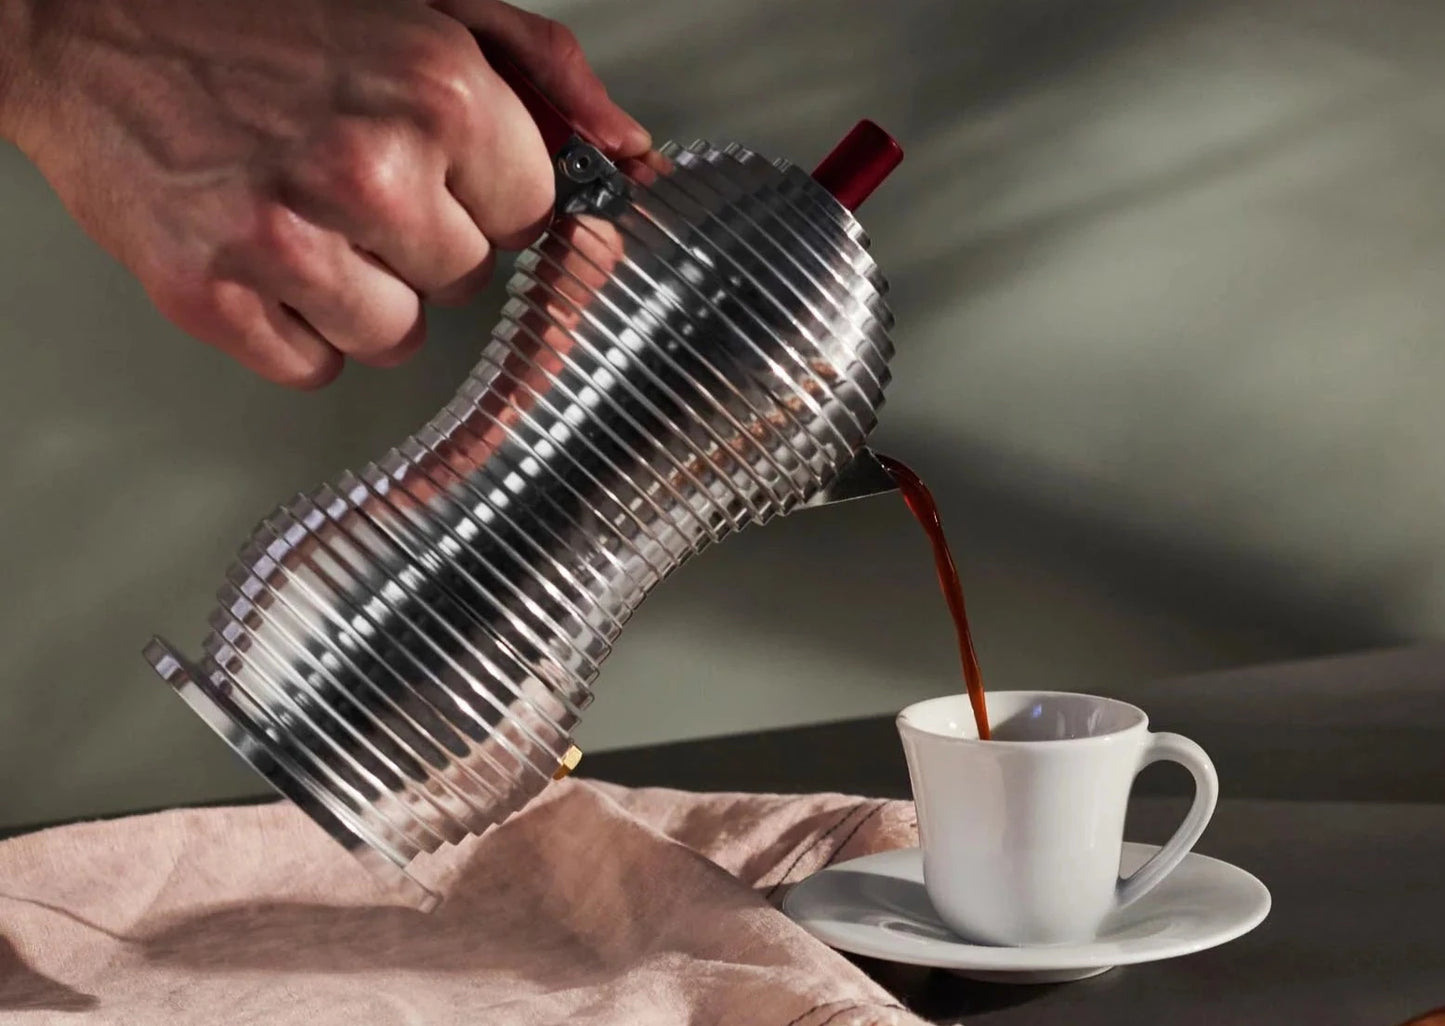 Dim Gray Pulcina Espresso Coffee Maker - 3 Cups